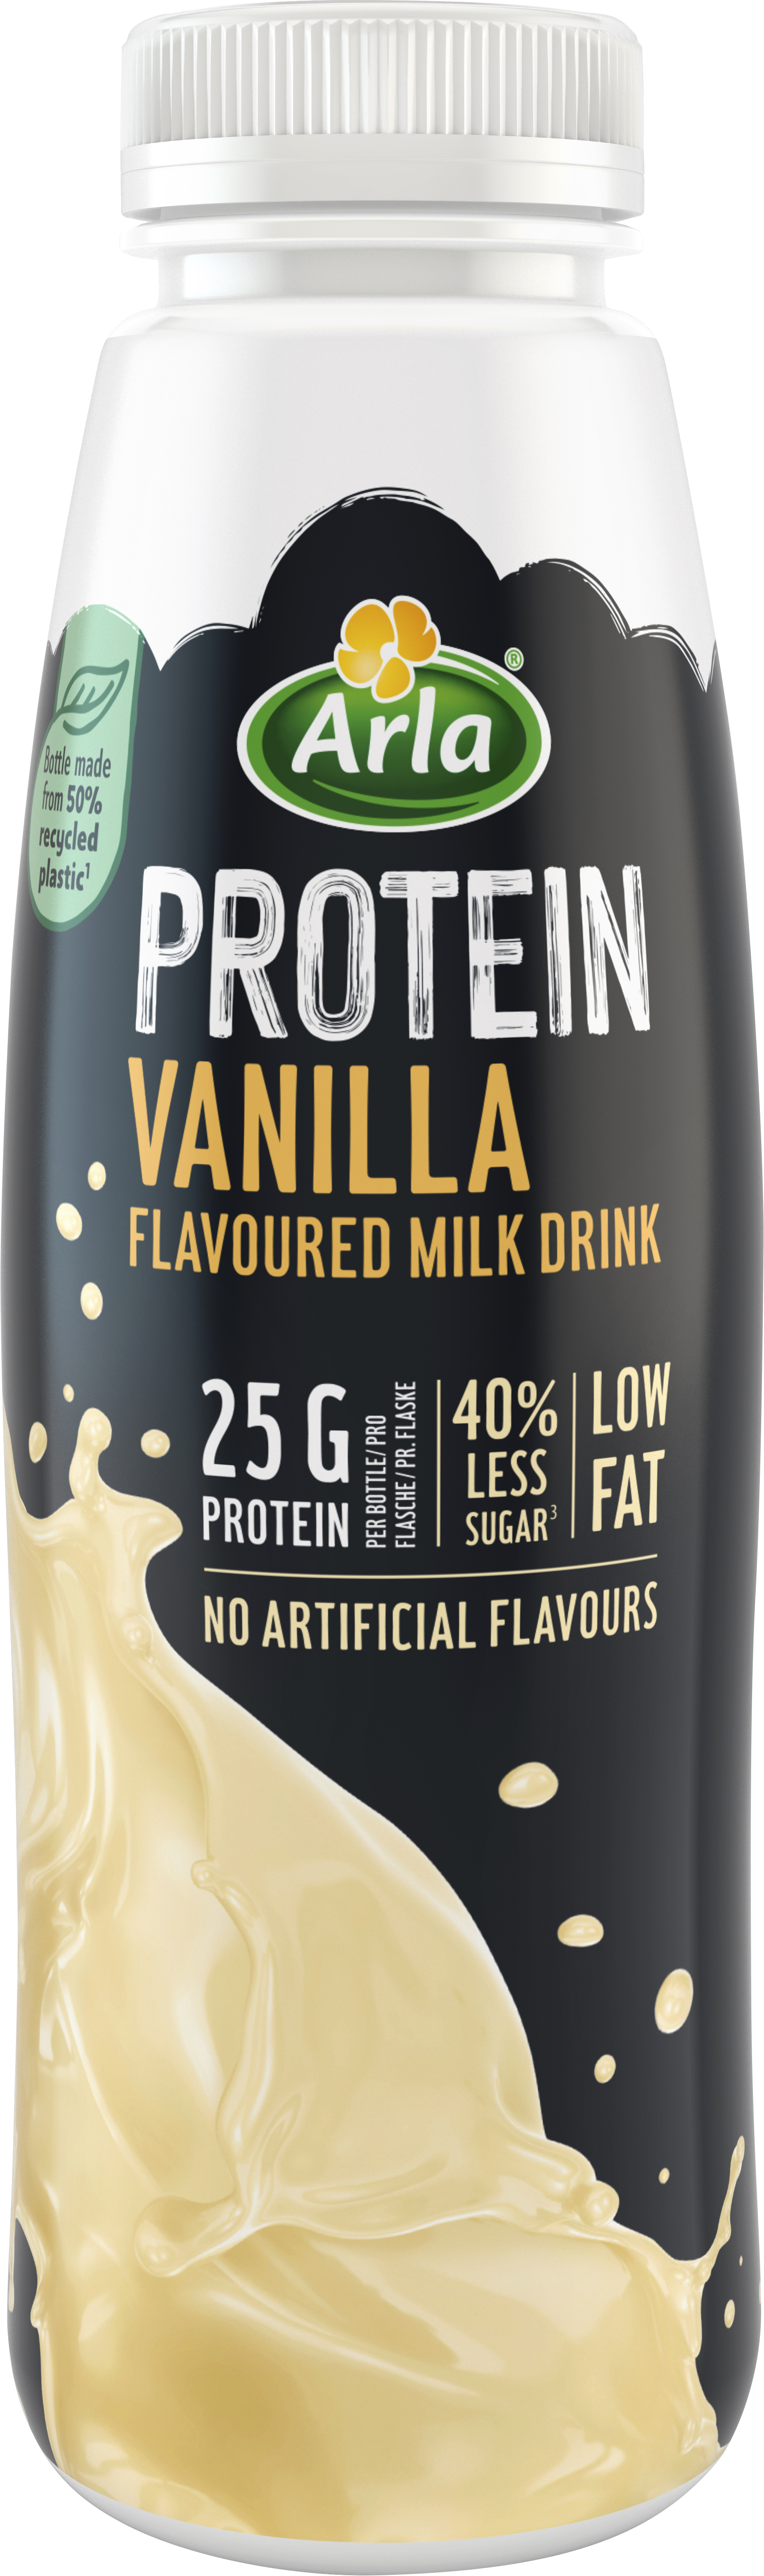 Arla Protein Vanilla flavoured milk 482ml